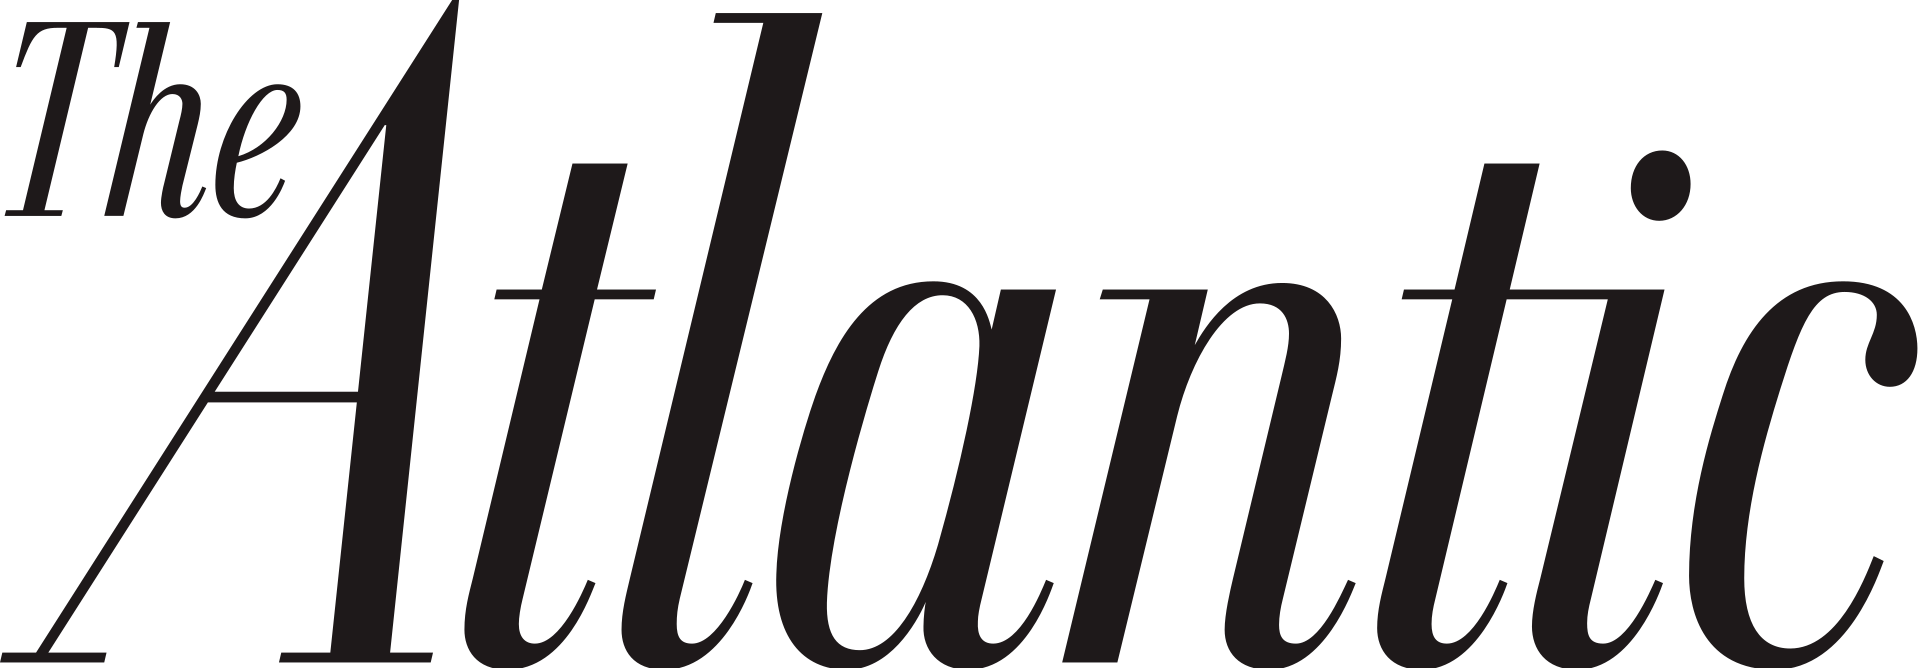 Bryan Singer Exposé Discussion Thread - Atlantic Magazine Logo (1920x668)